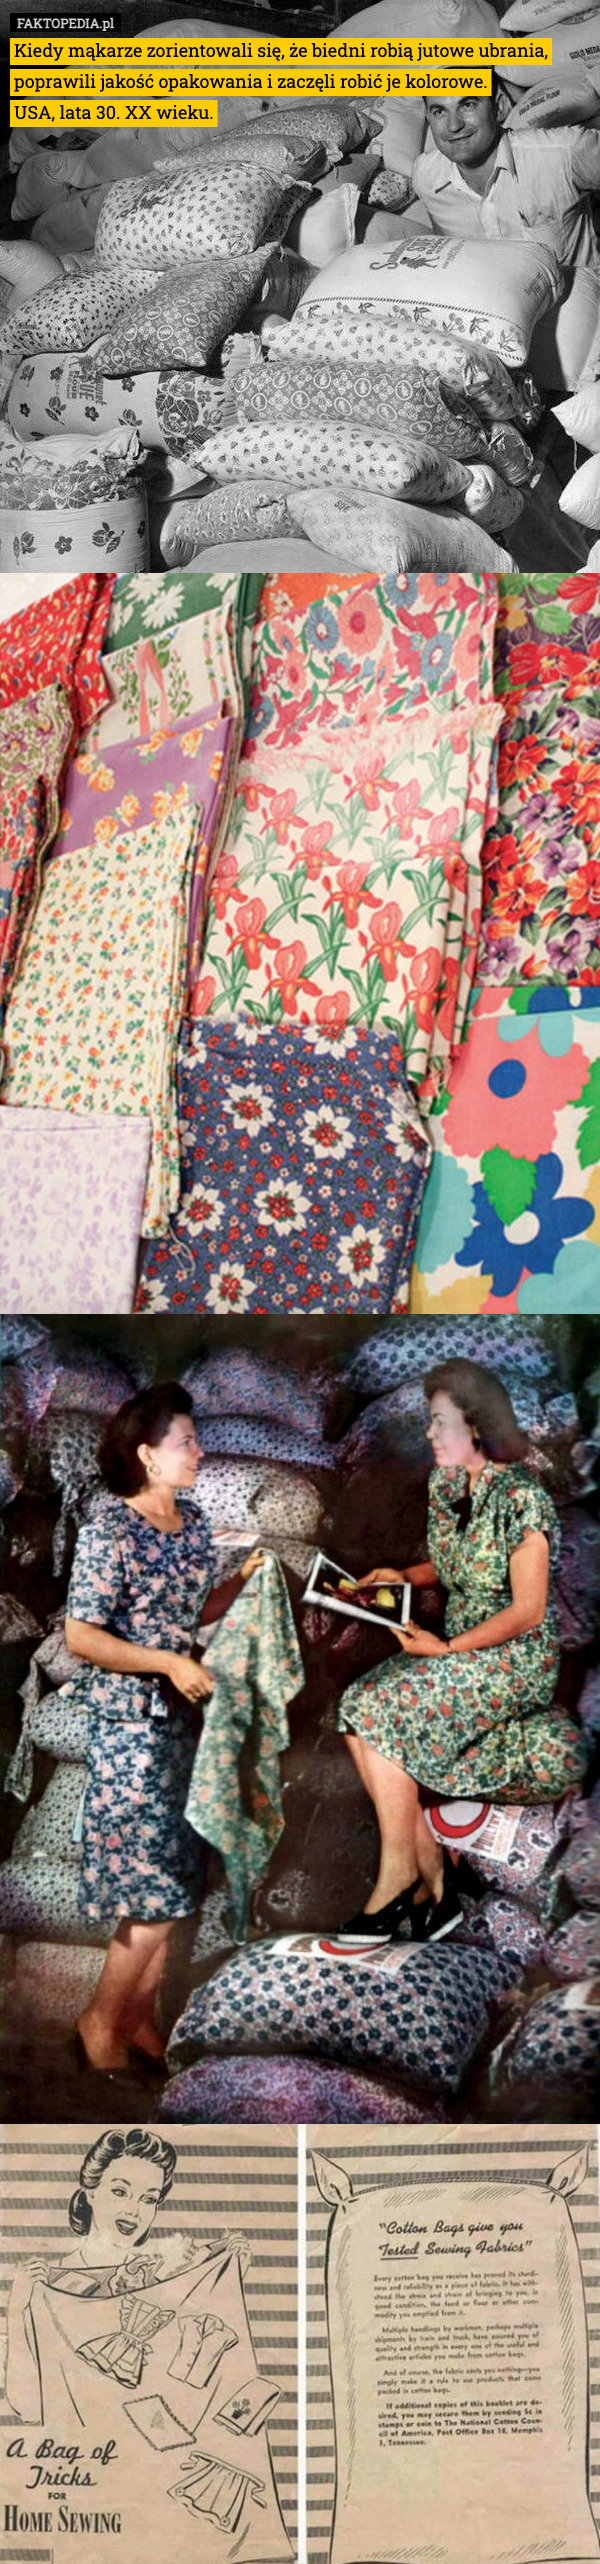 Kiedy mąkarze zorientowali się, że biedni robią jutowe ubrania, poprawili jakość opakowania i zaczęli robić je kolorowe.
USA, lata 30. XX wieku. 